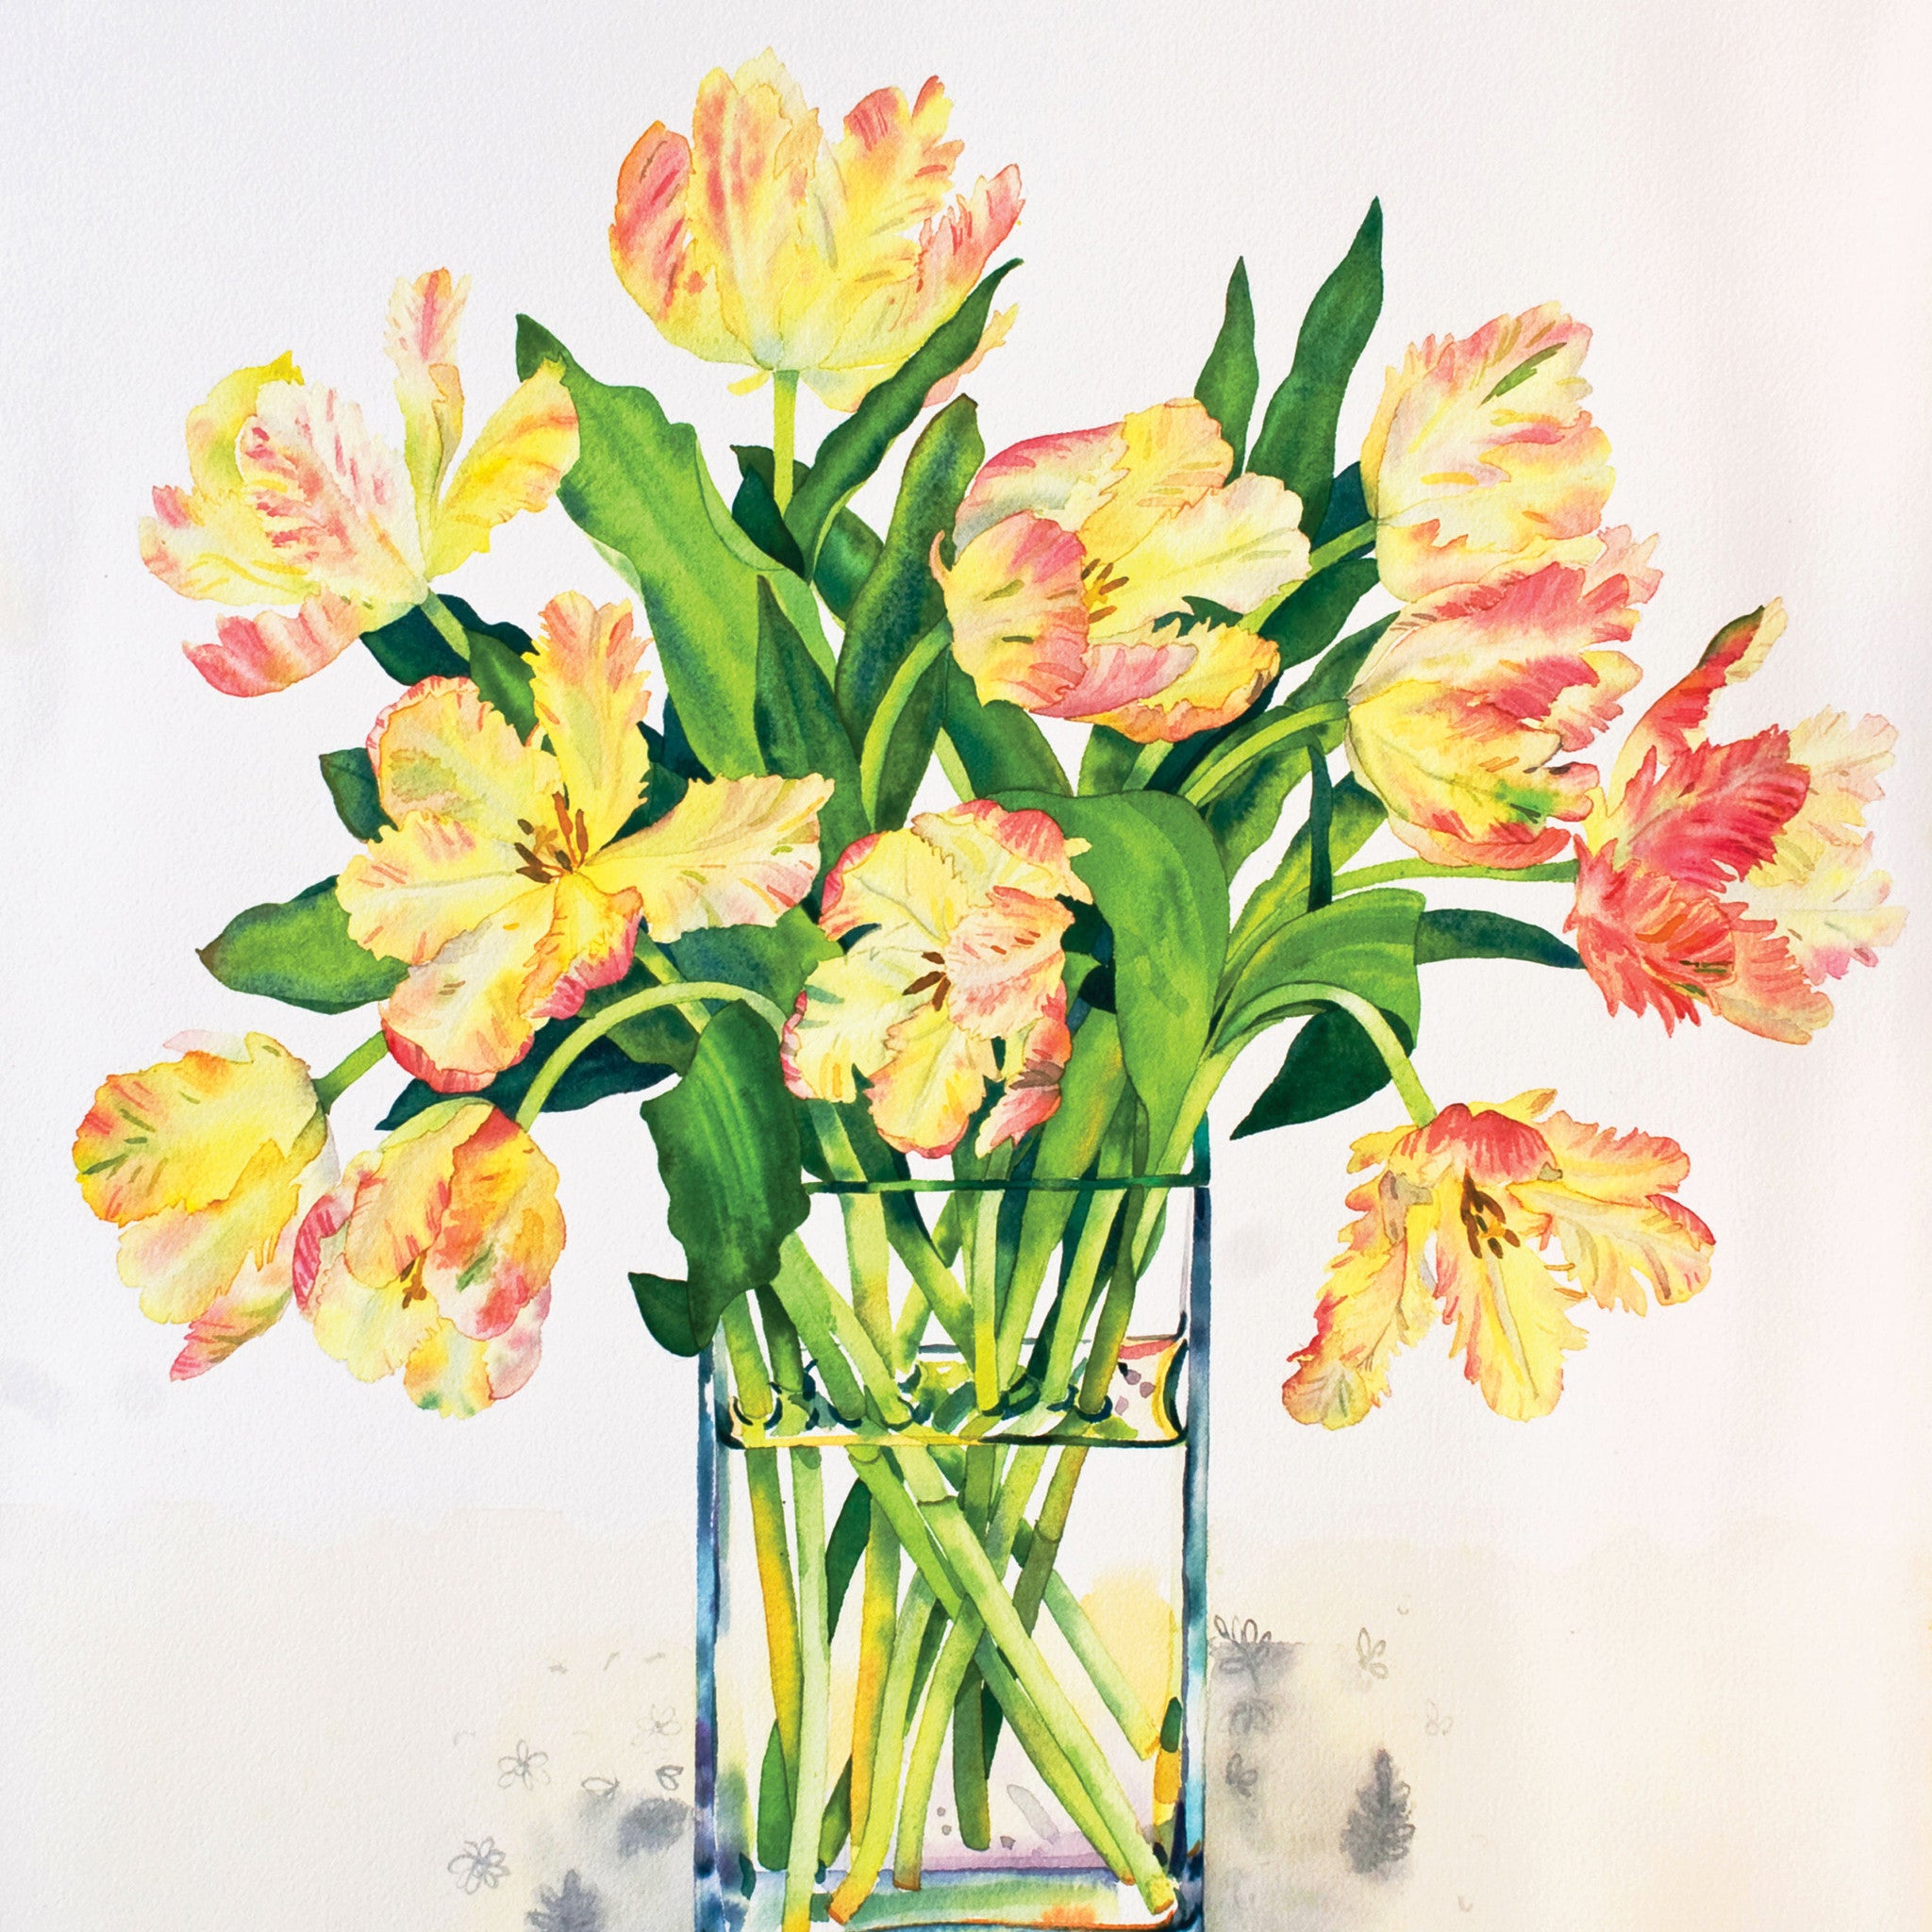 Libretto Tulips by Claire Winteringham, Fine Art Greeting Card, Watercolour and Gouache, Orange Libretto tulips in glass vase